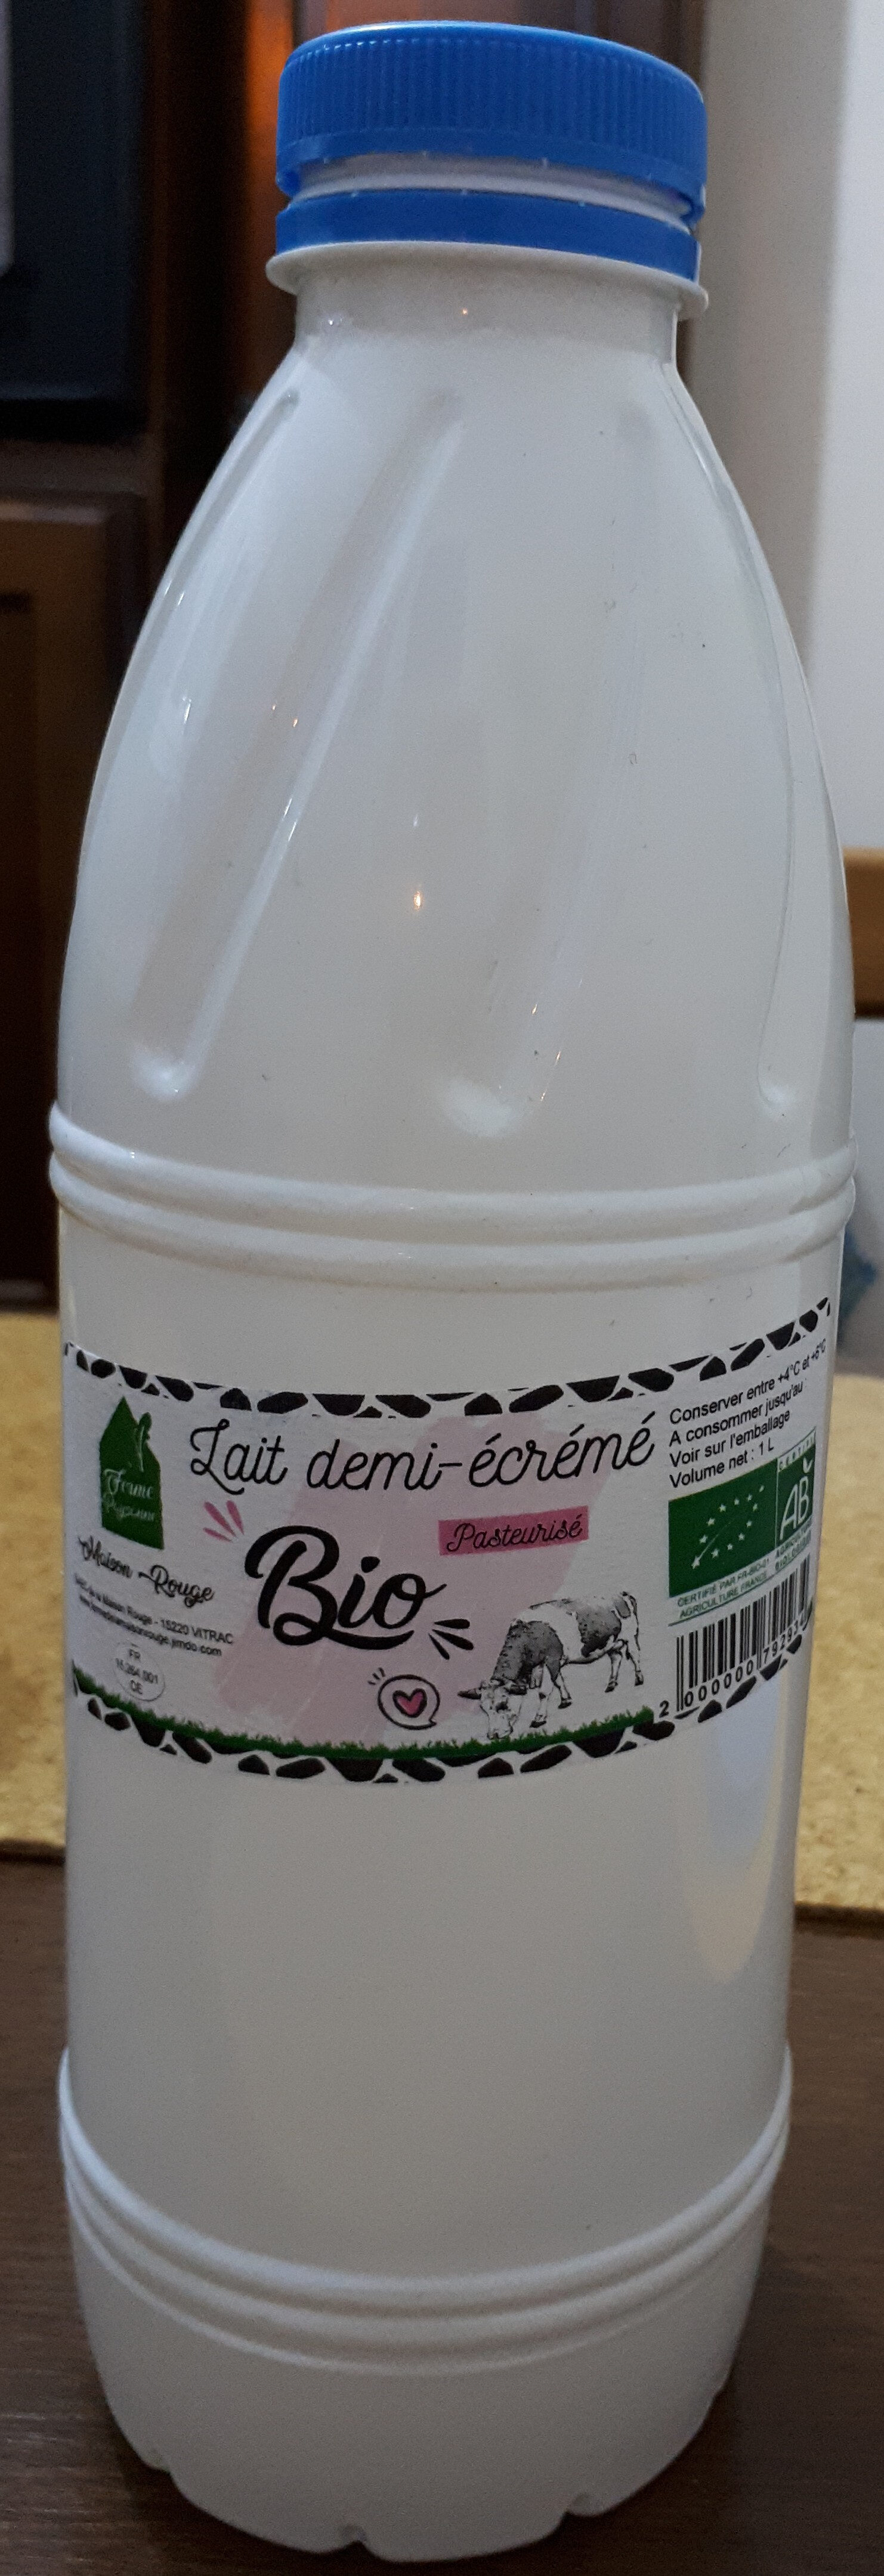 lait demi écrémé pasteurisé - Product - fr